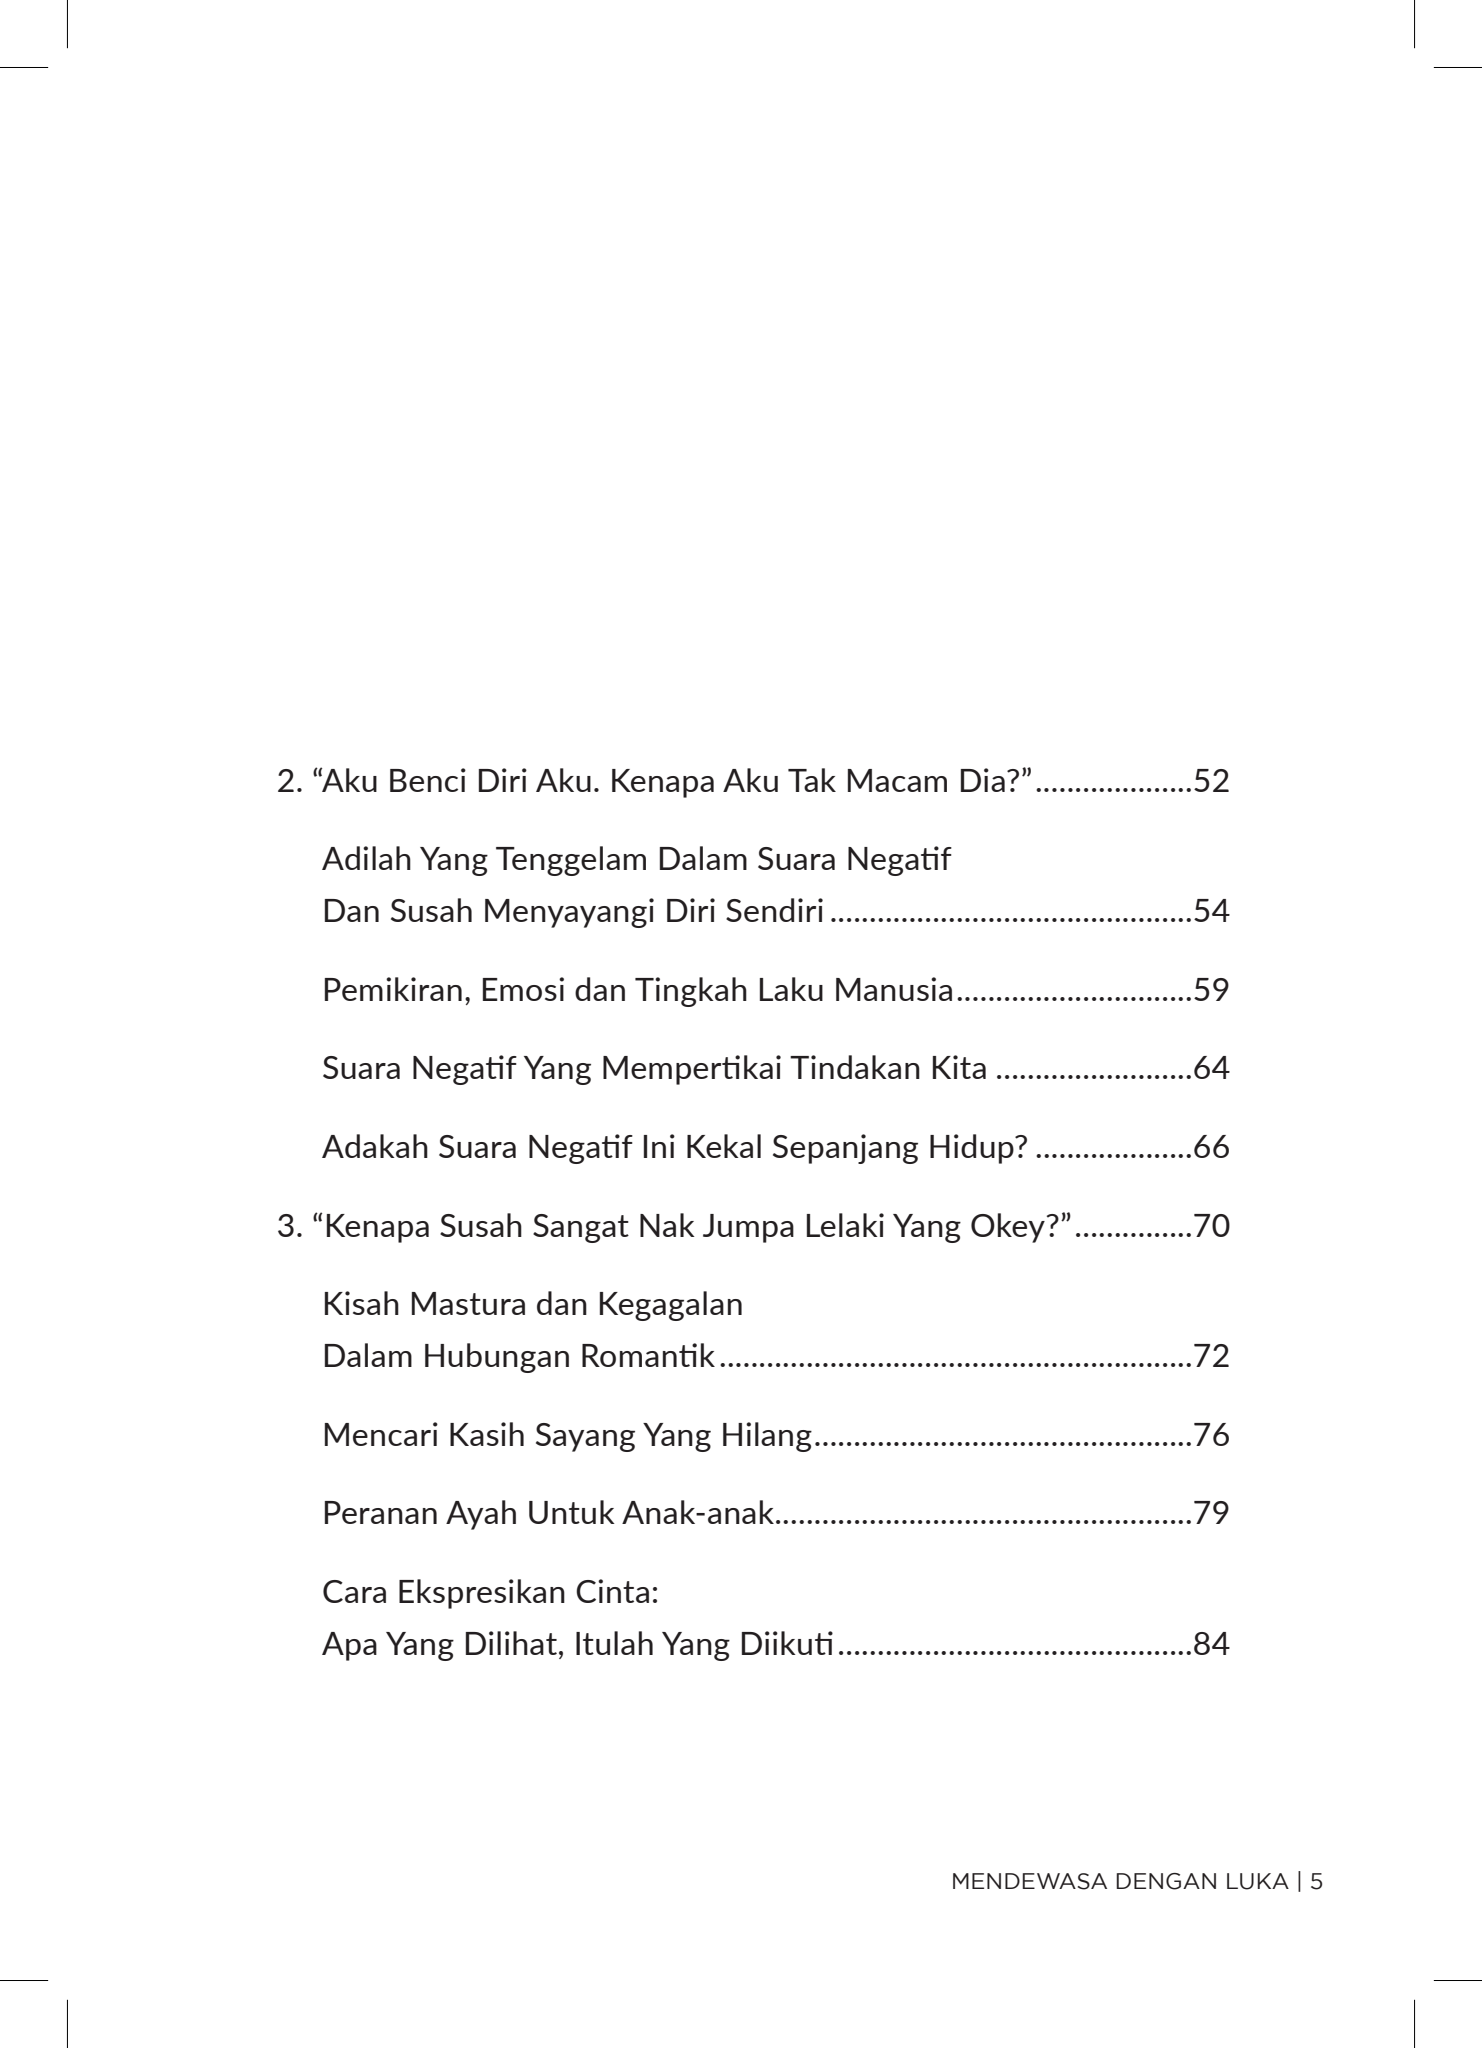 Iman Publication Buku Mendewasa Dengan Luka: Bagaimana Masa Lalu Memberi Kesan Kepada Emosi Diri By Aiman Amri 201591